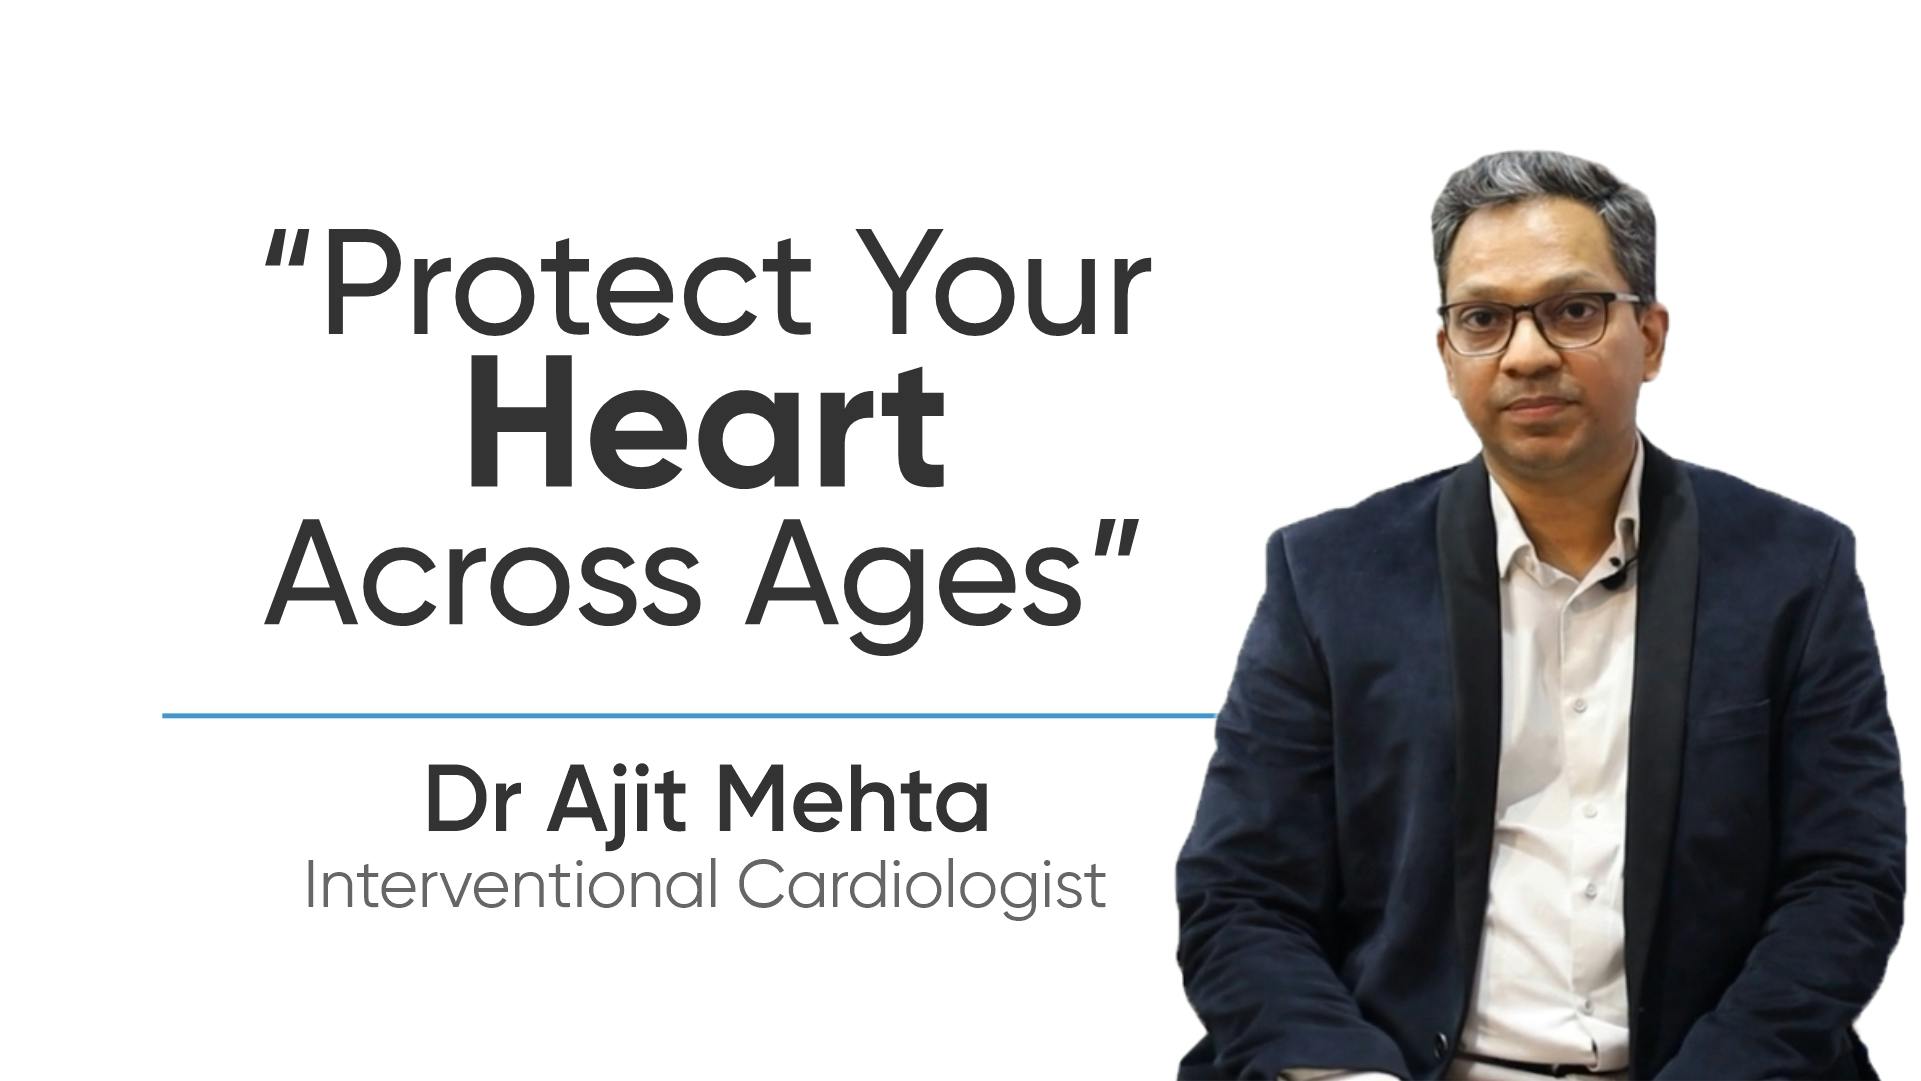 Dr. Ajit Mehta